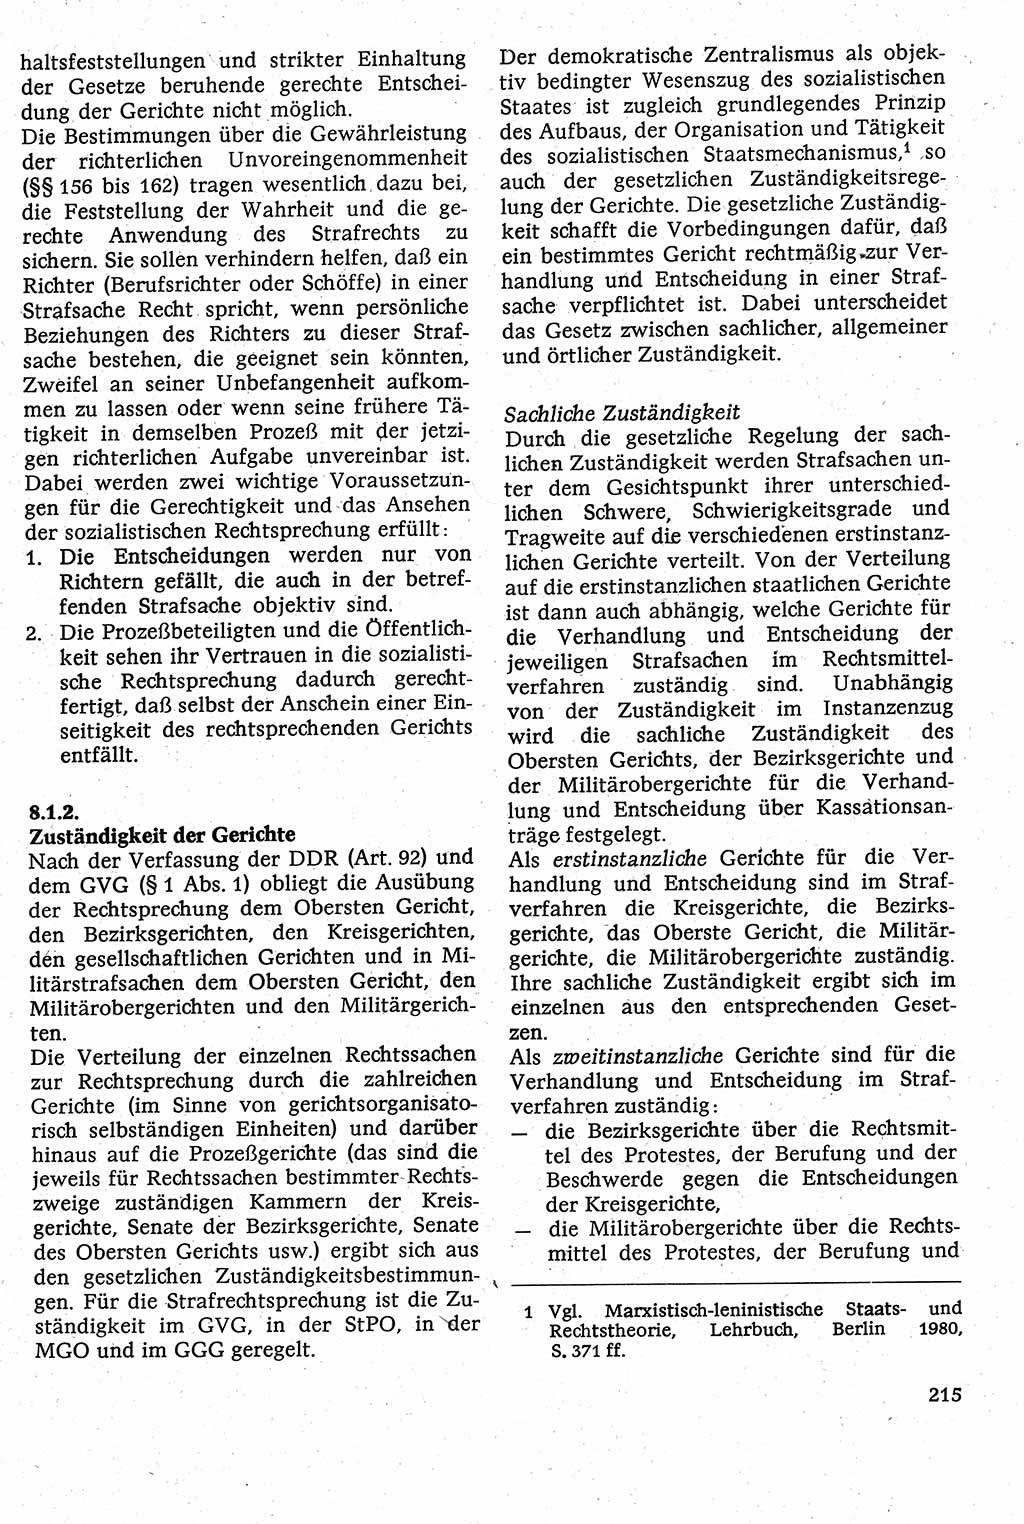 Strafverfahrensrecht [Deutsche Demokratische Republik (DDR)], Lehrbuch 1982, Seite 215 (Strafverf.-R. DDR Lb. 1982, S. 215)